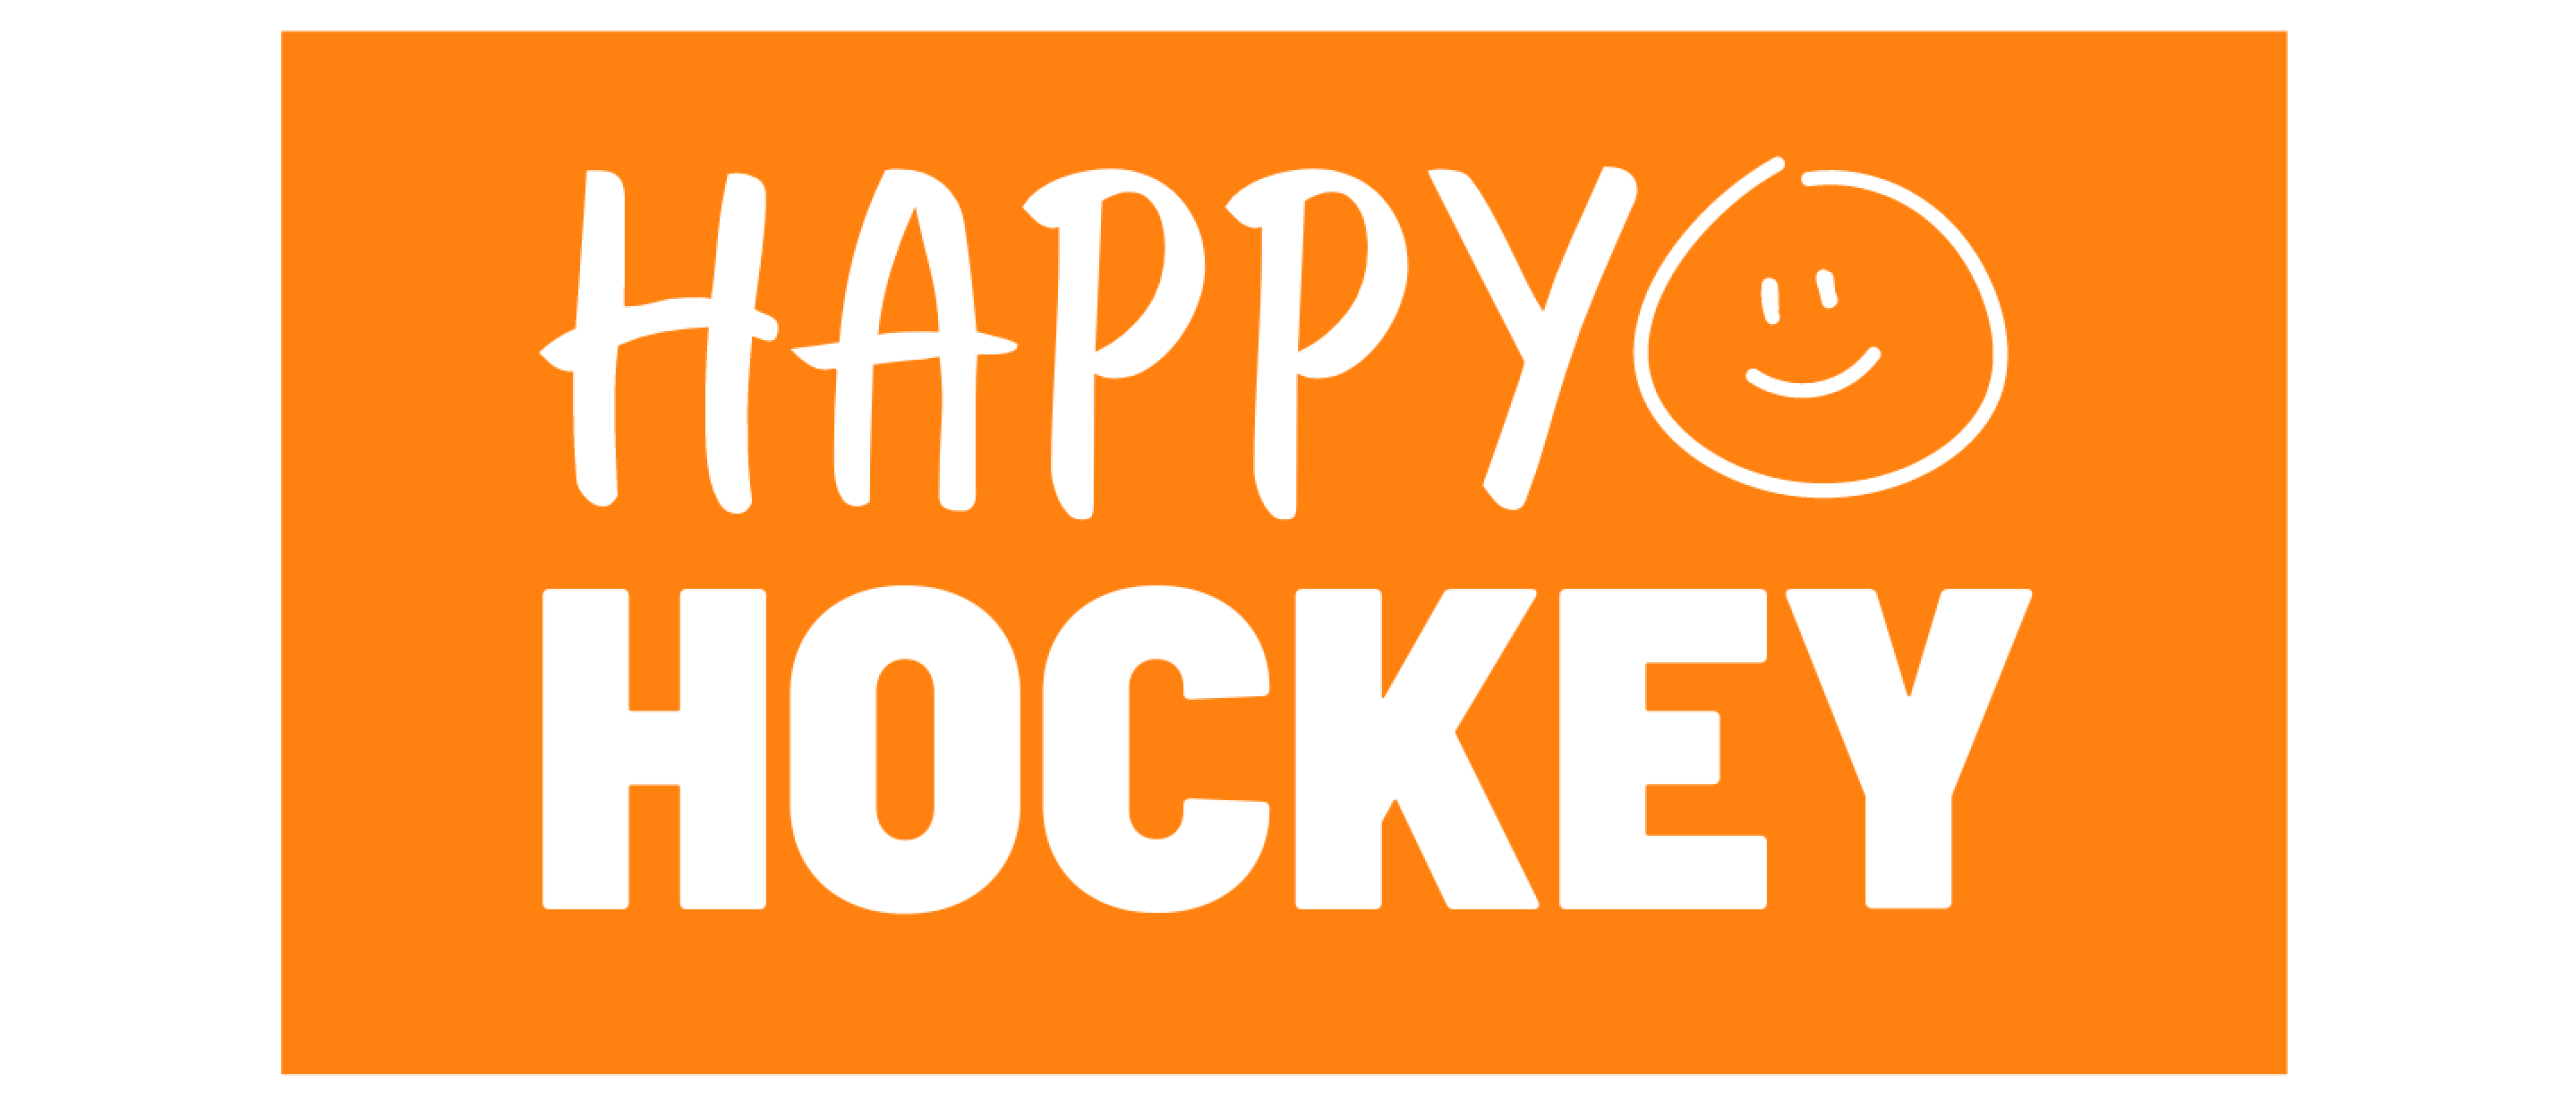 Happy Hockey